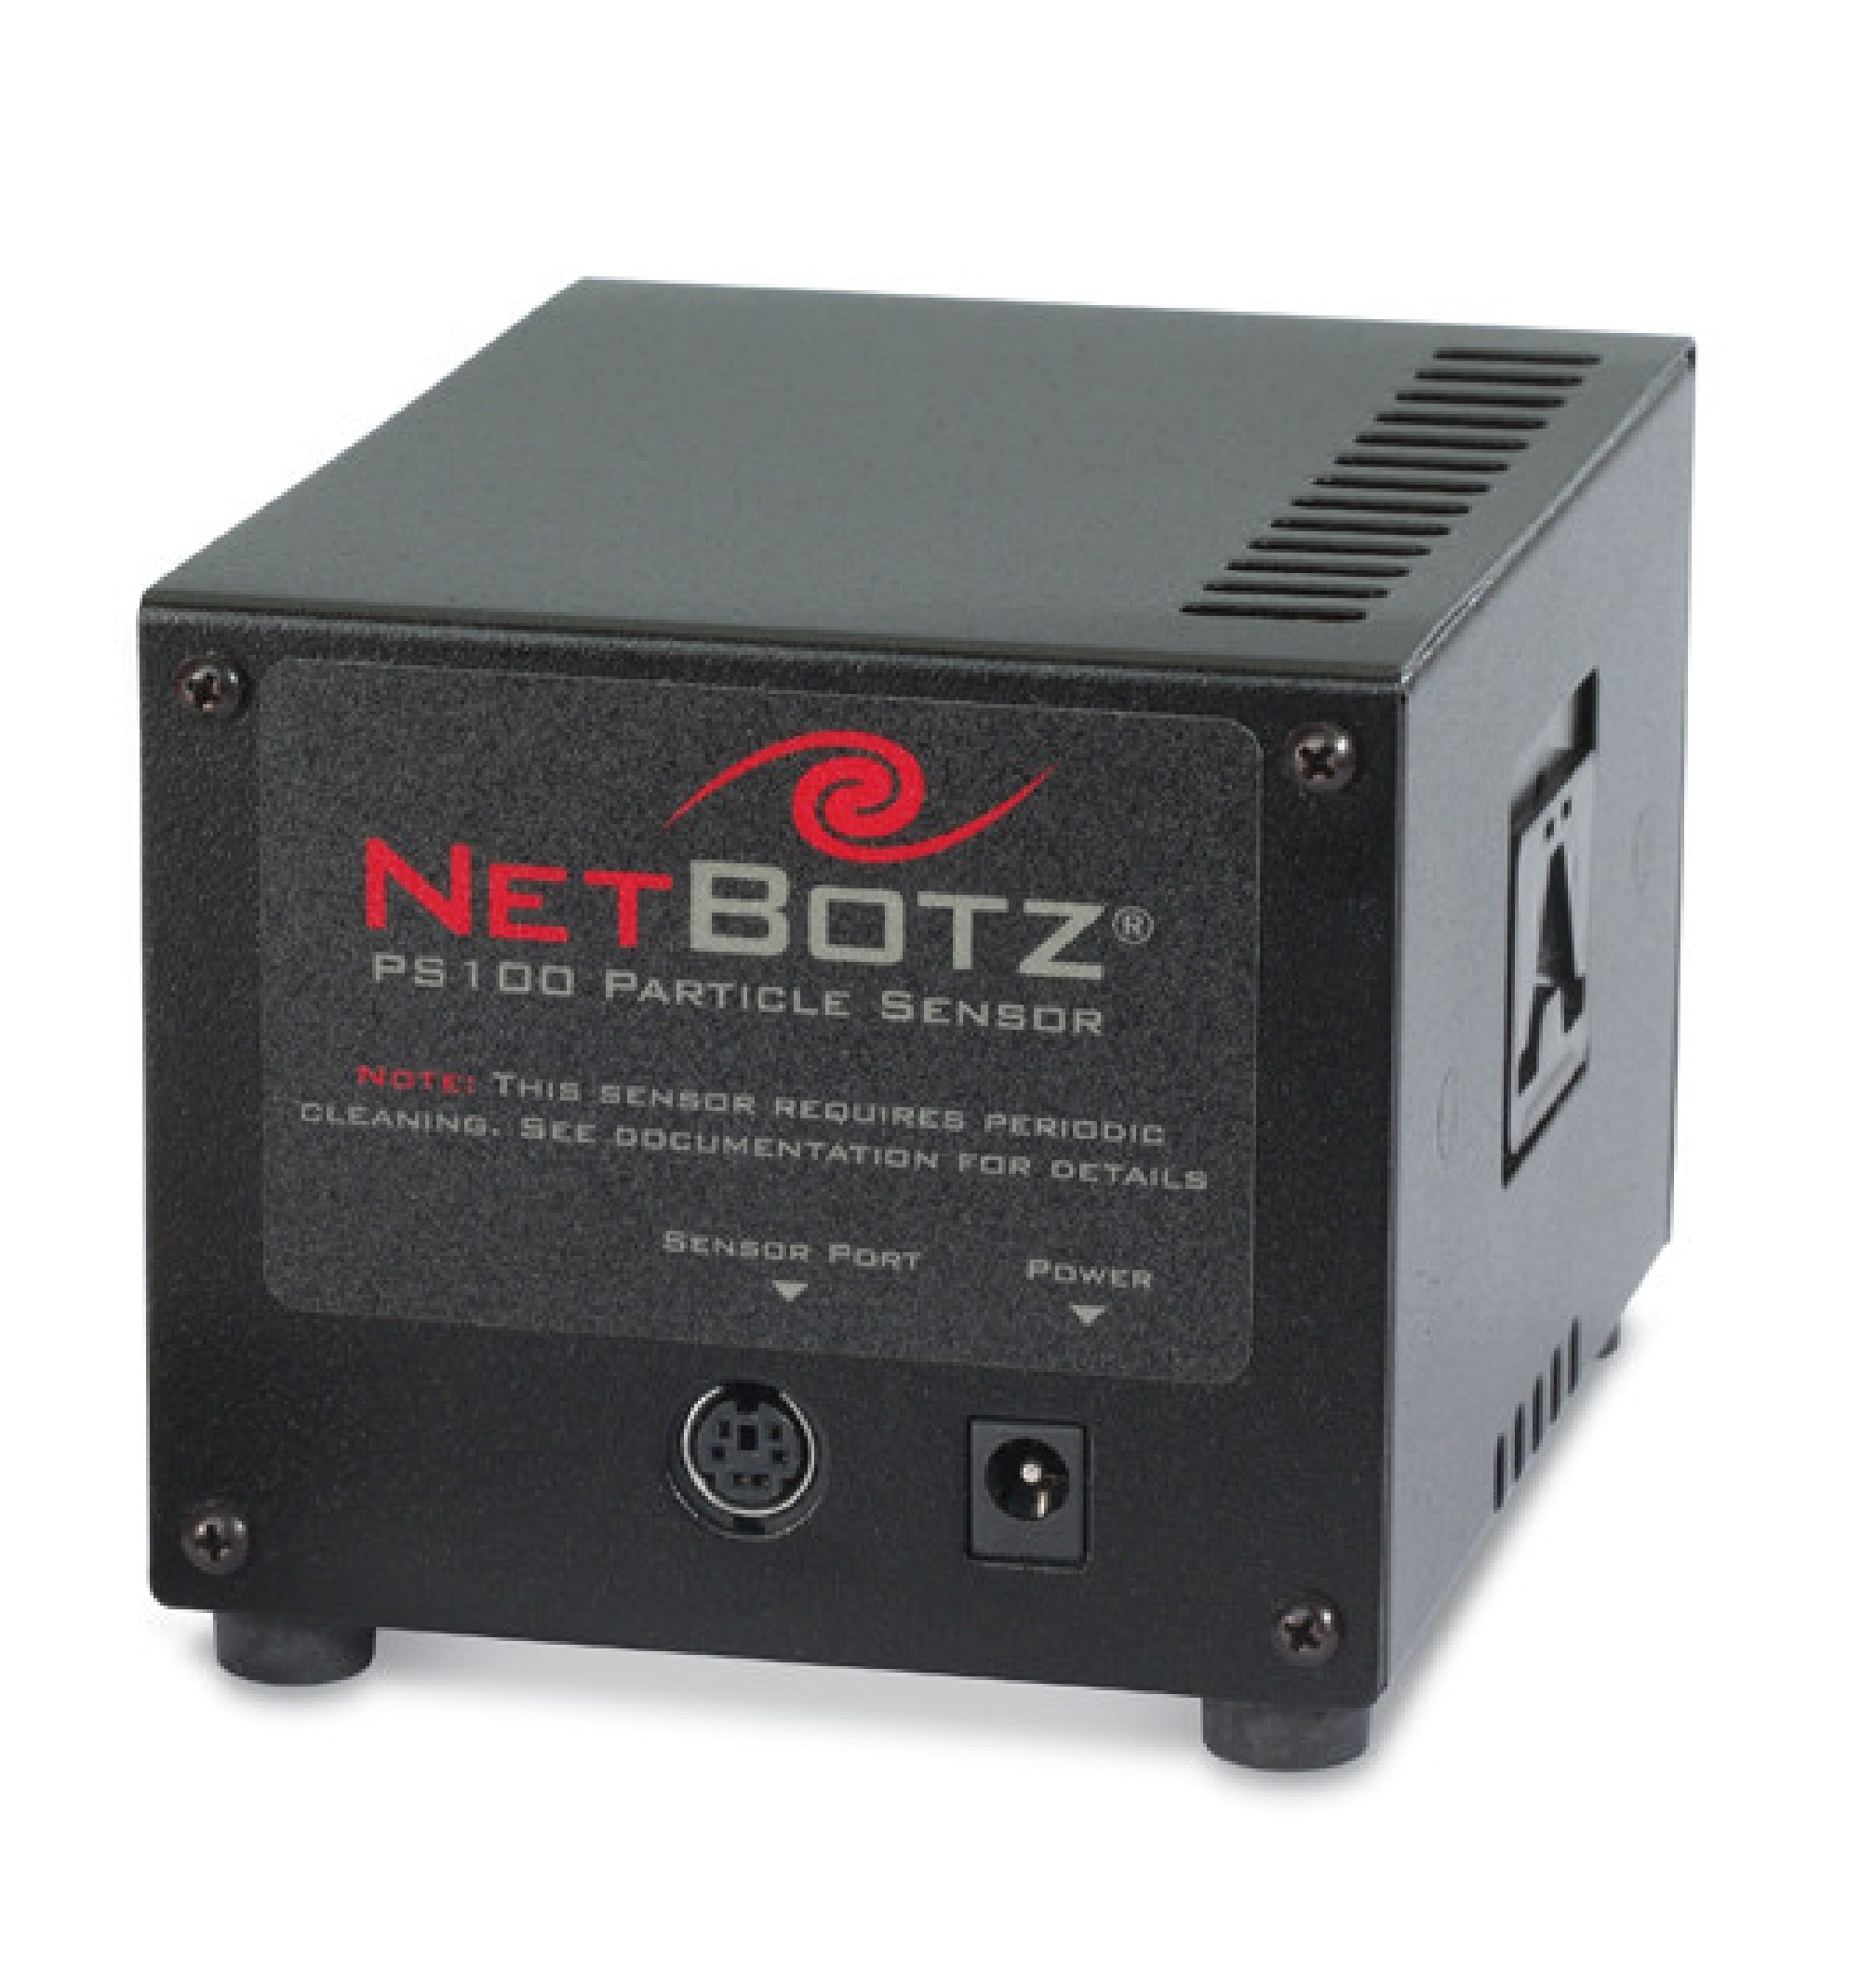 Sensor de partículas PS100 NetBotz da APC